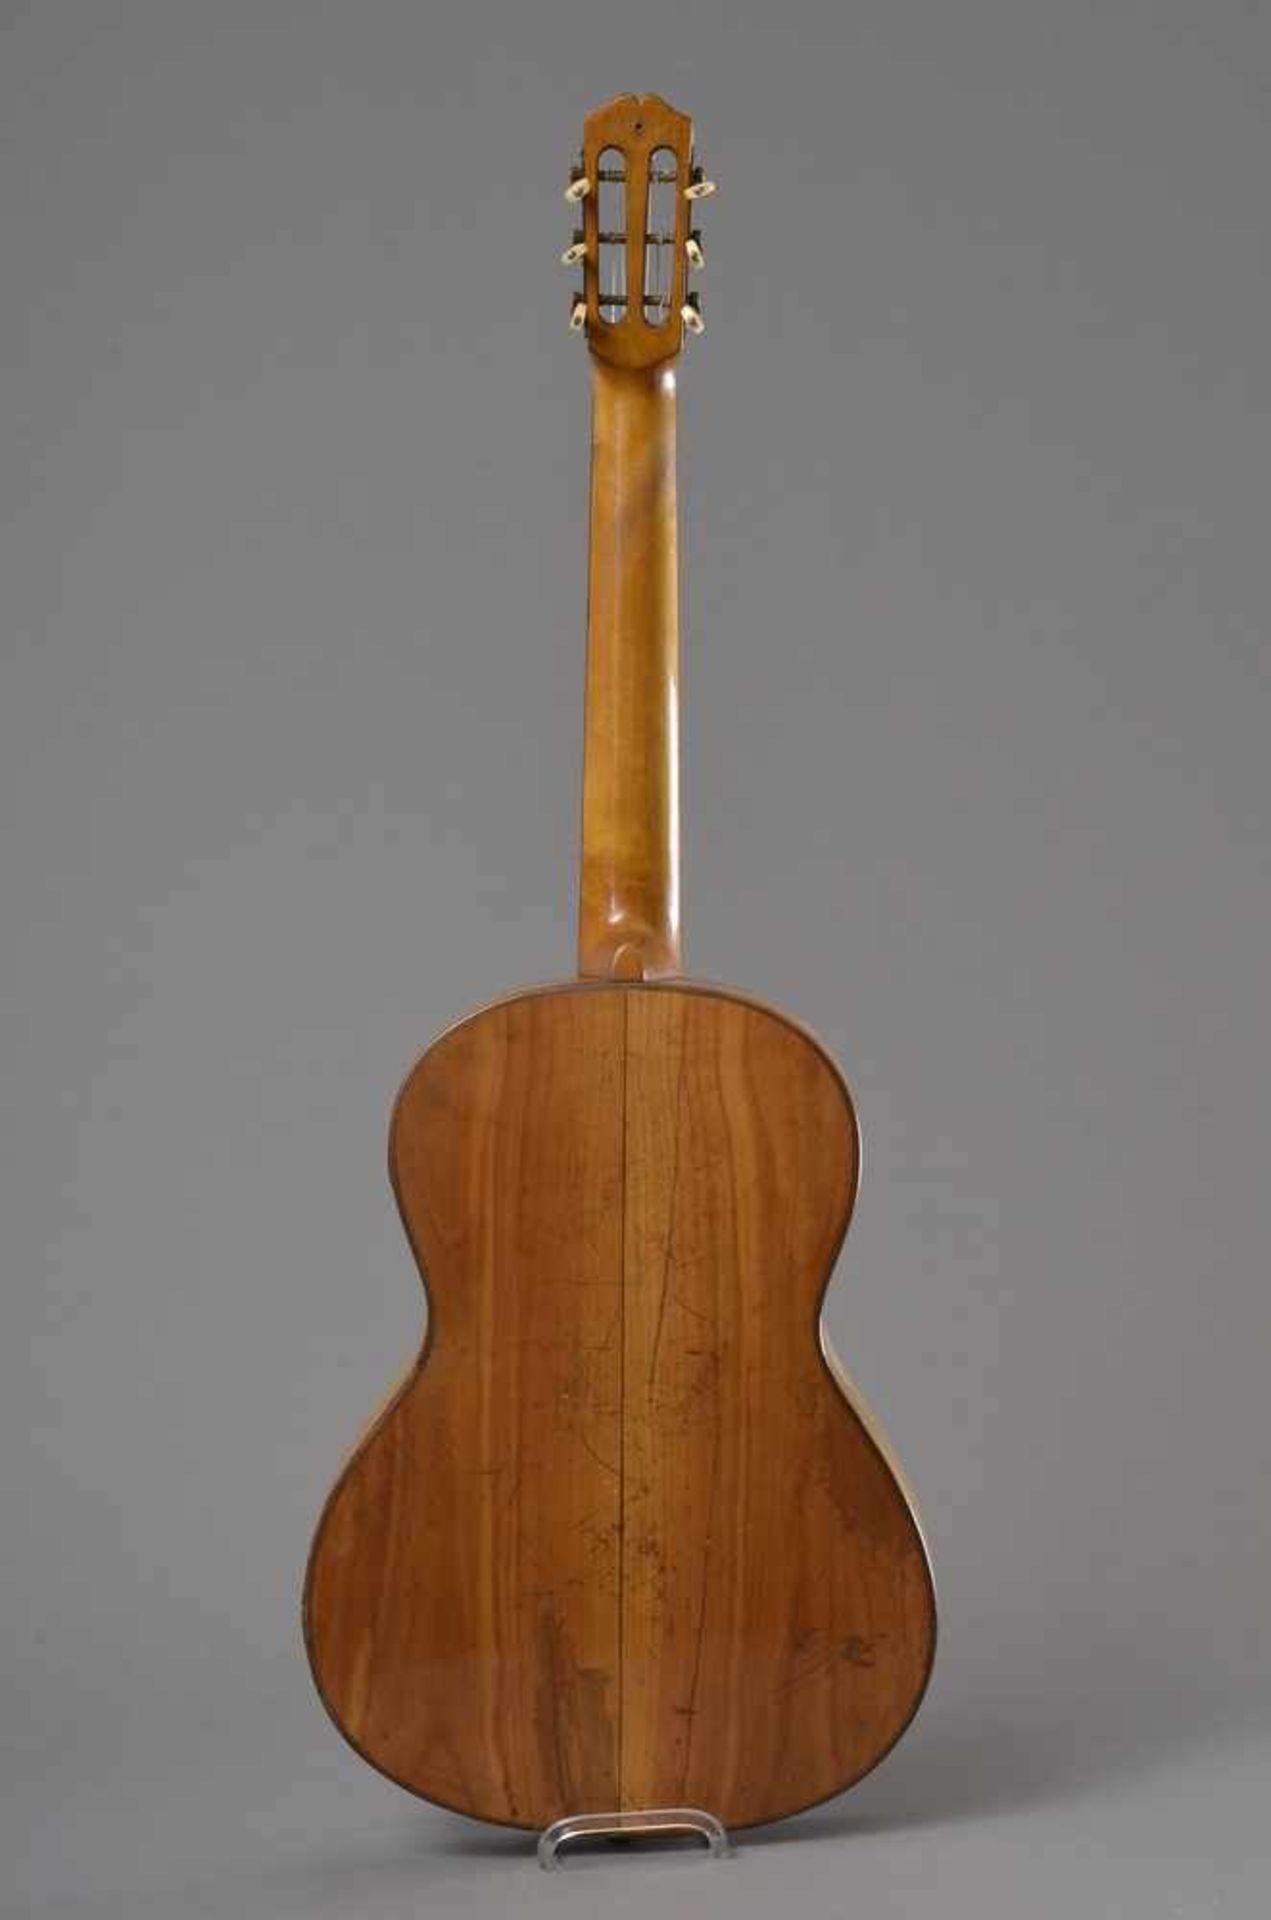 Historische Gitarre, Mensur 62cm, Gesamtlänge 93cm, Saitenhöhe 4mm, ca. 100 Jahre alt, spielbar - Bild 2 aus 8